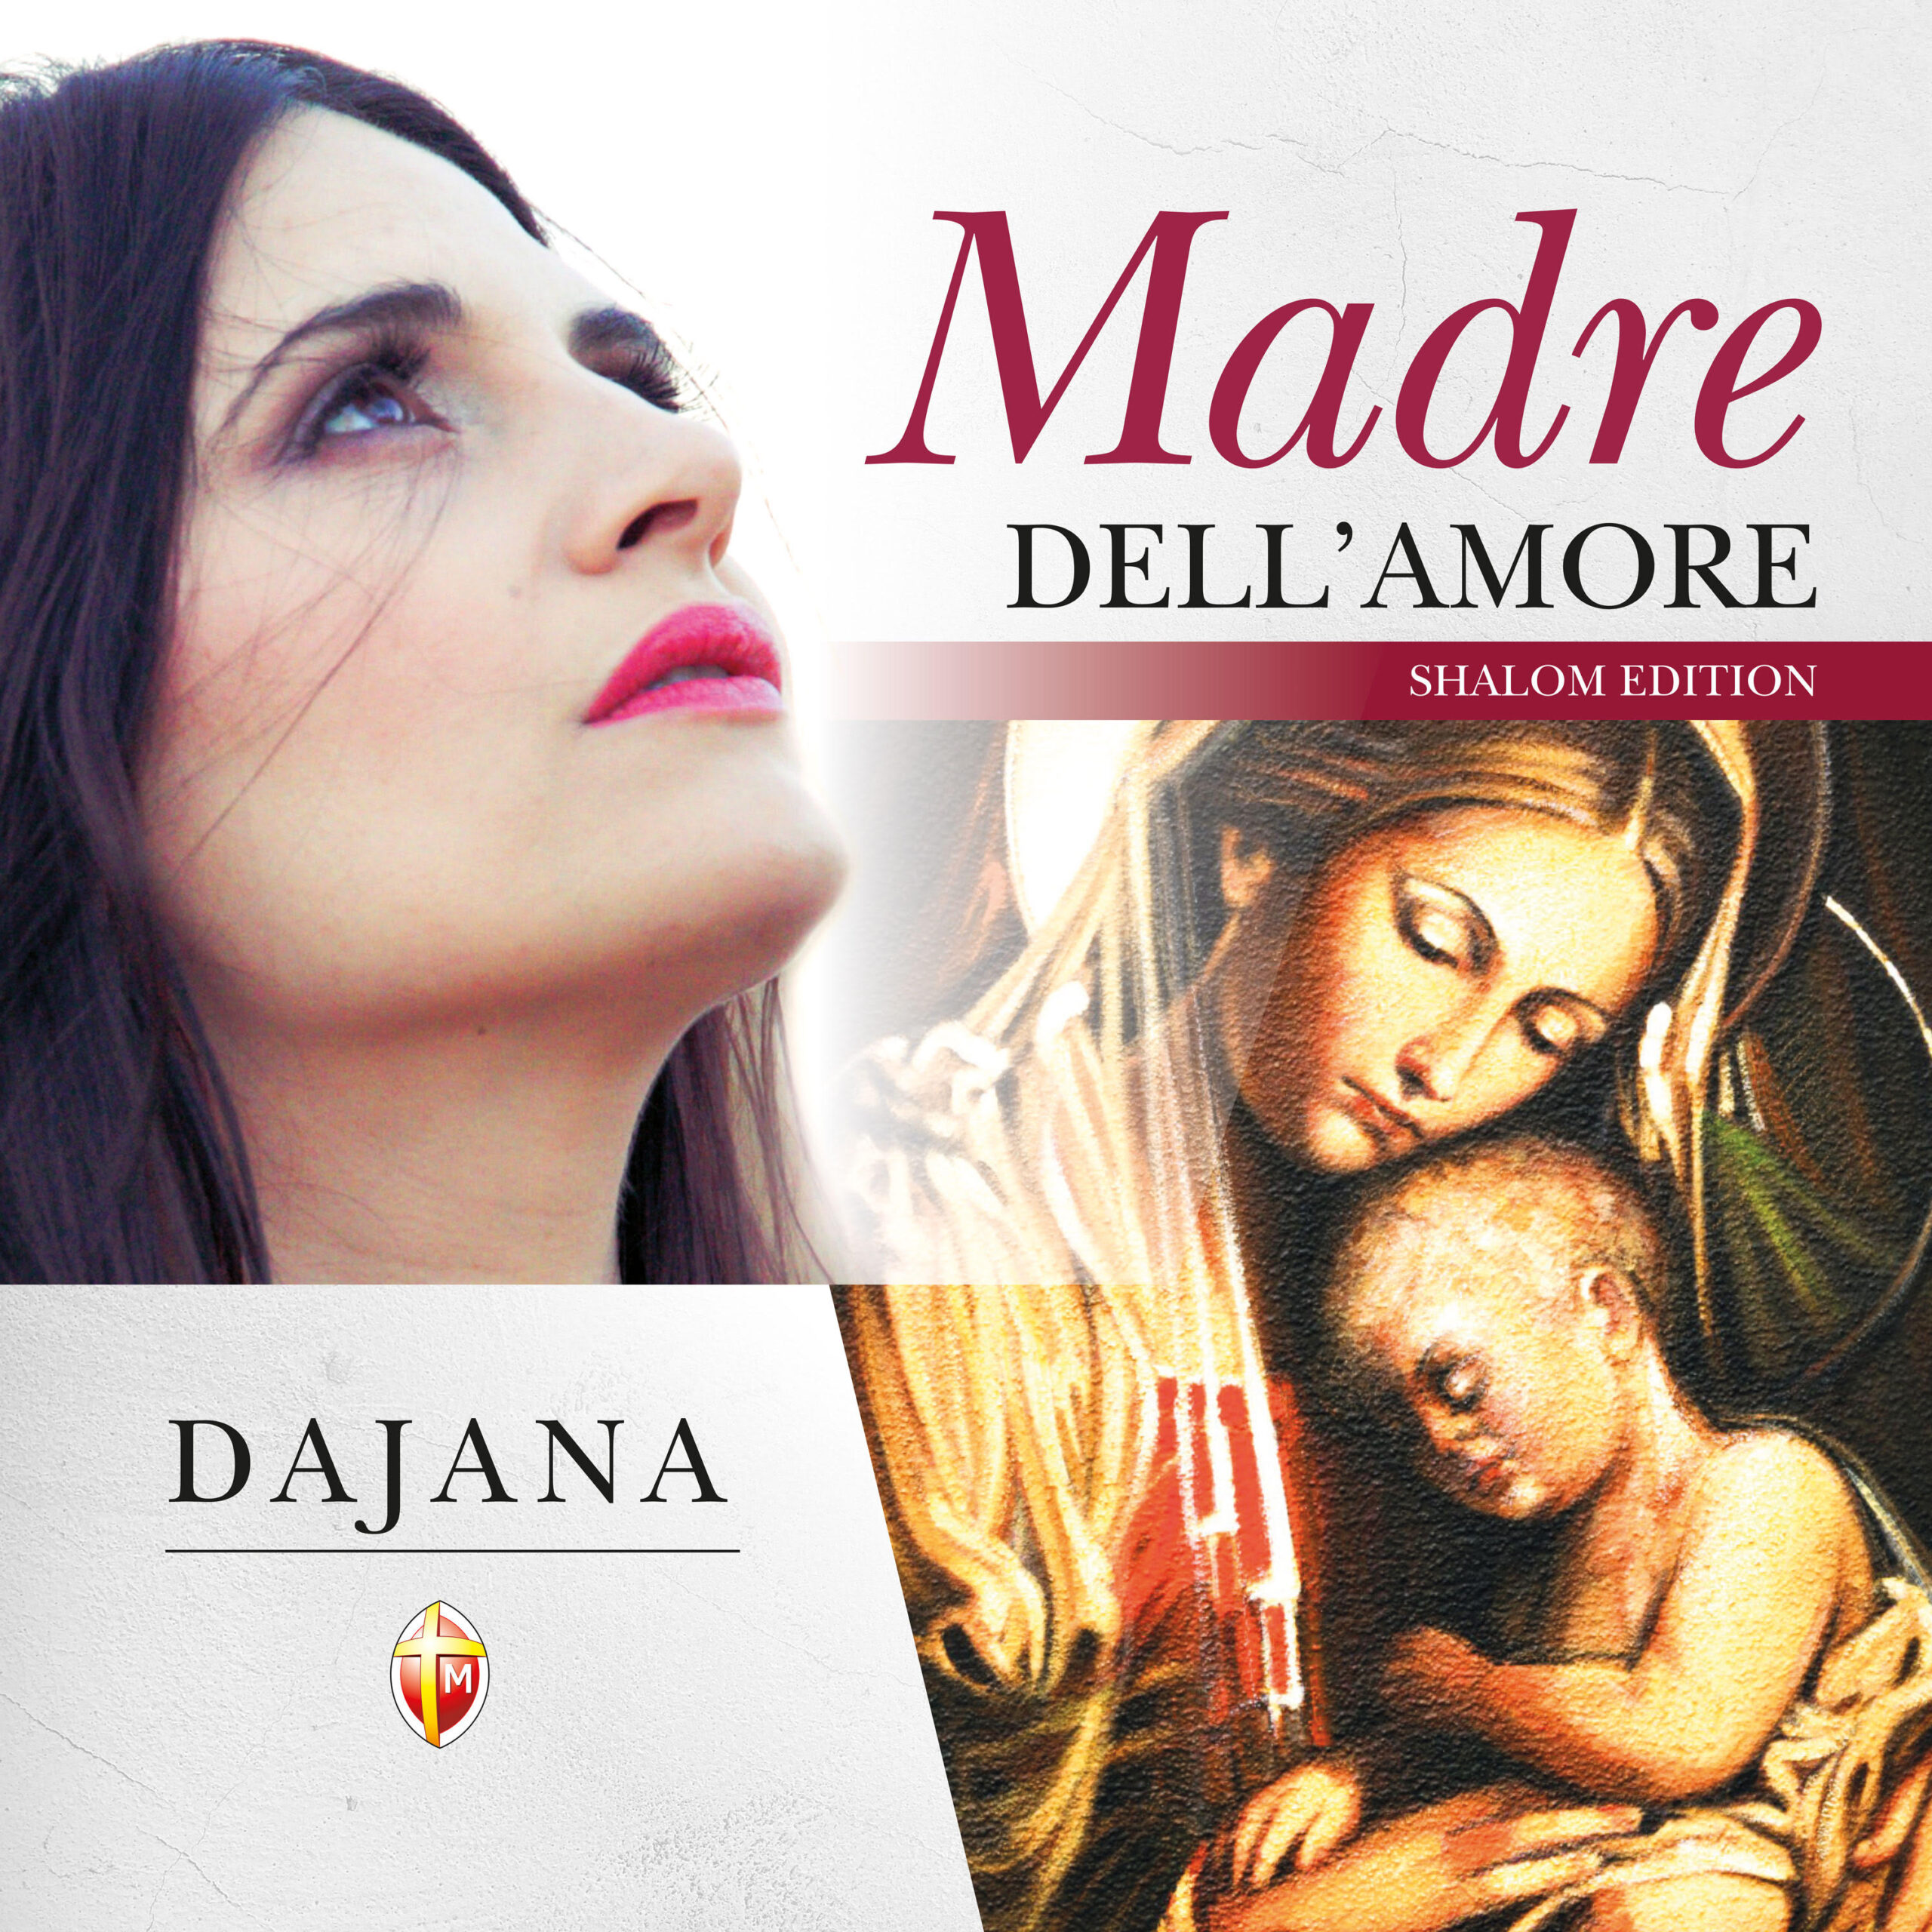 “Figli della Luce – Salmo 23”: Dajana lancia il singolo estratto da “Madre dell’amore”